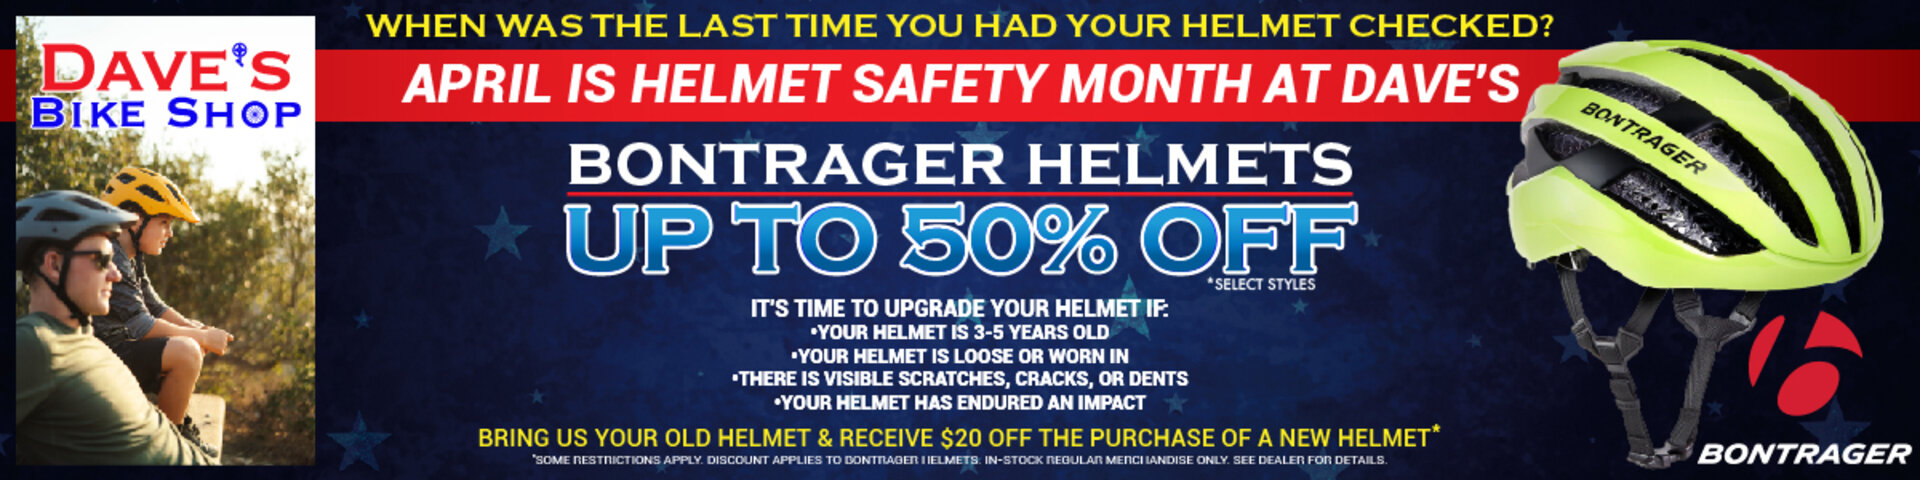 Bontrager Helmets up to 50% off at Dave's Bike Shop